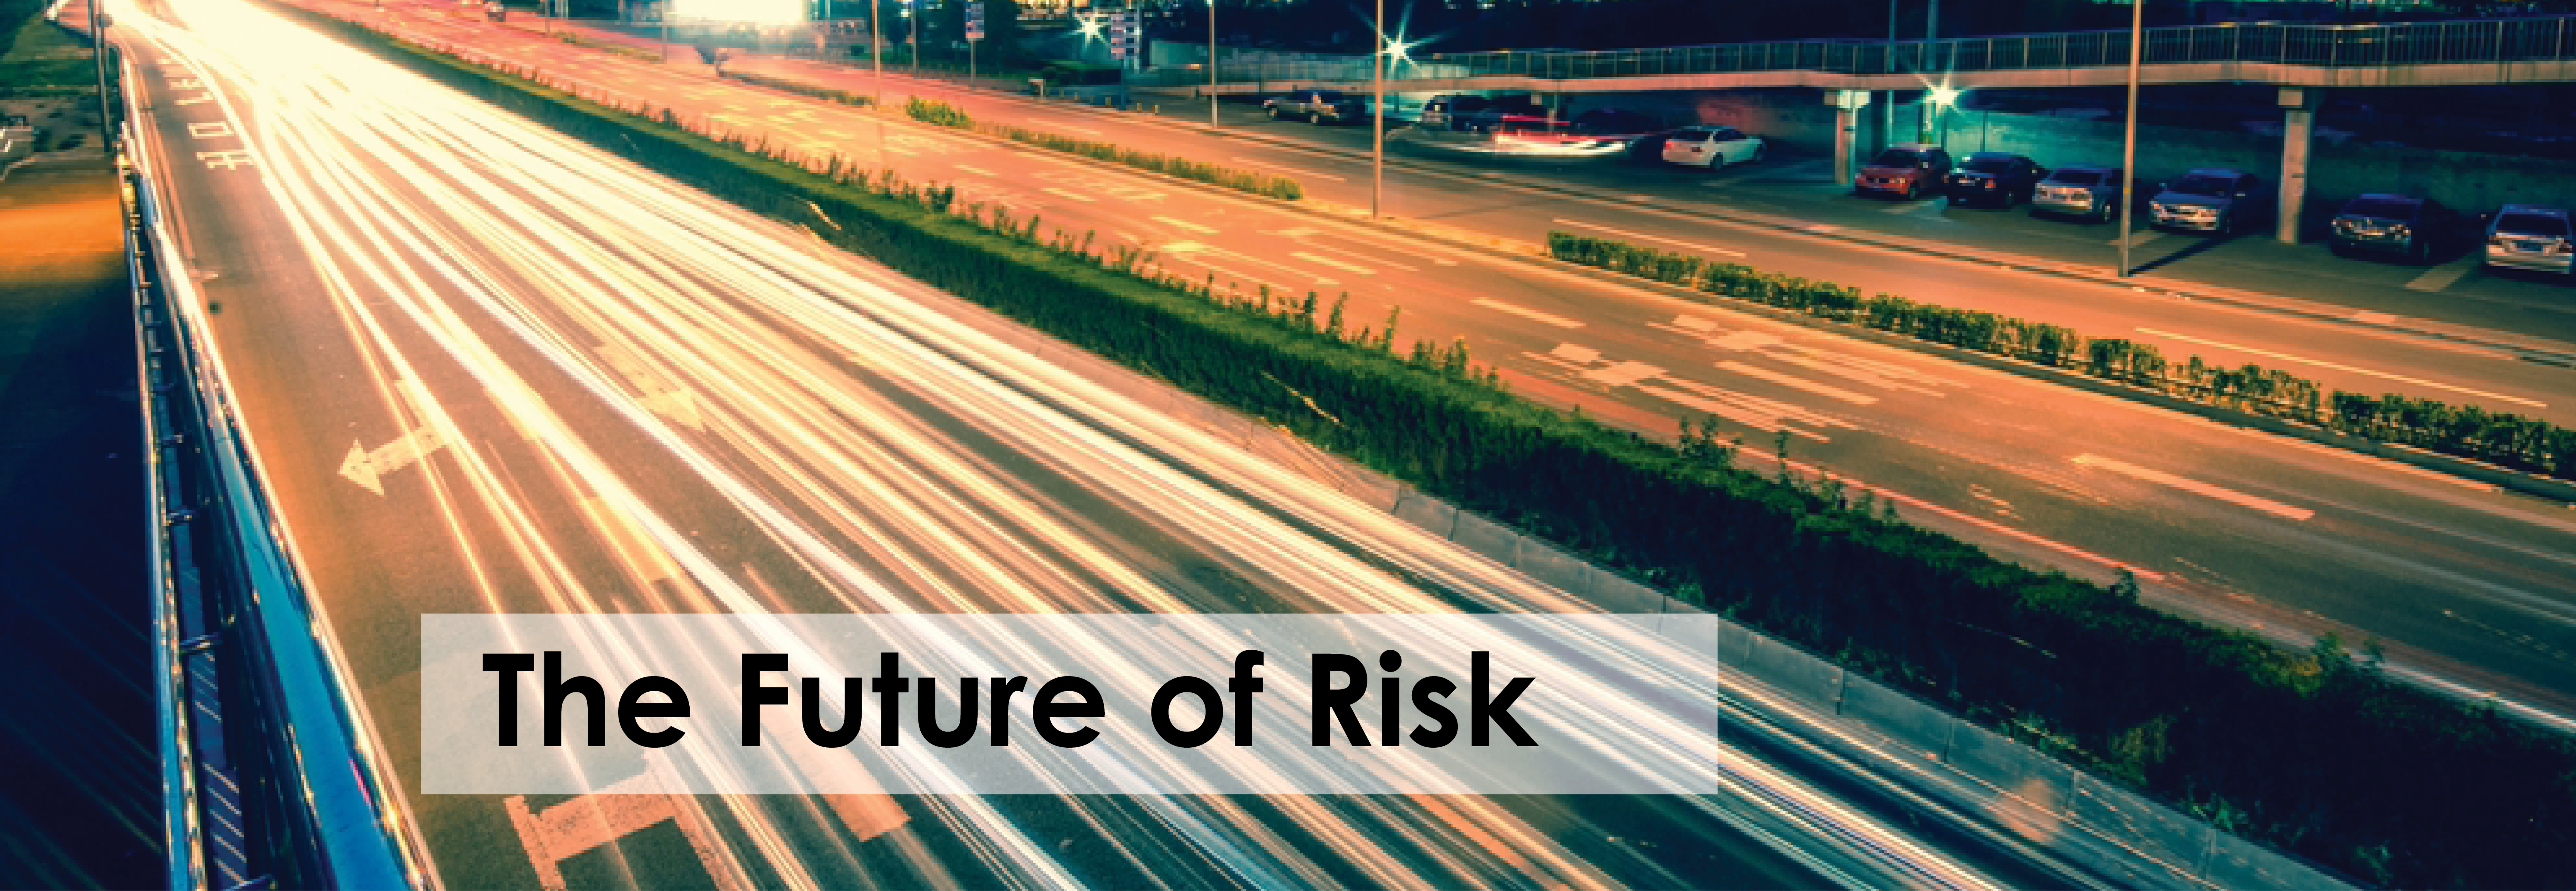 the future of risk